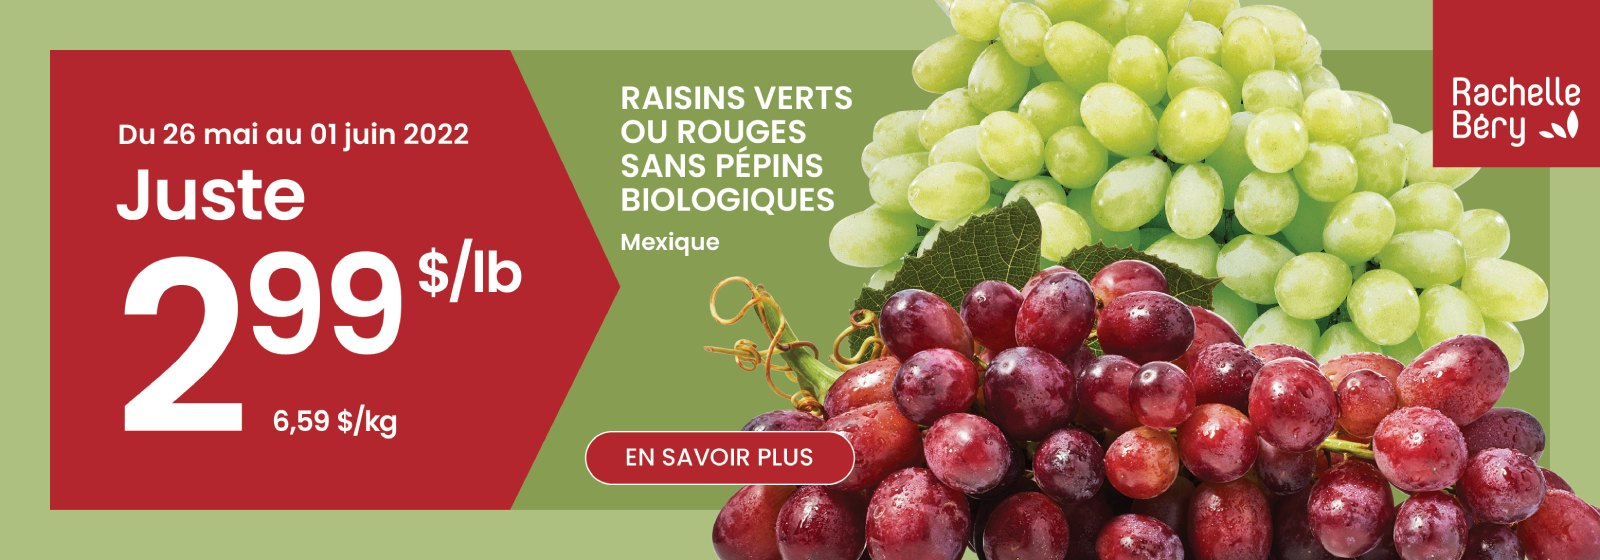 Lecture du texte : 'Achetez des raisins verts ou rouges sans pépins du Mexique uniquement à 2,99 $ la livre du 26 mai au 1er juin 2022. Pour en savoir plus, cliquez sur le bouton ci-dessous.'